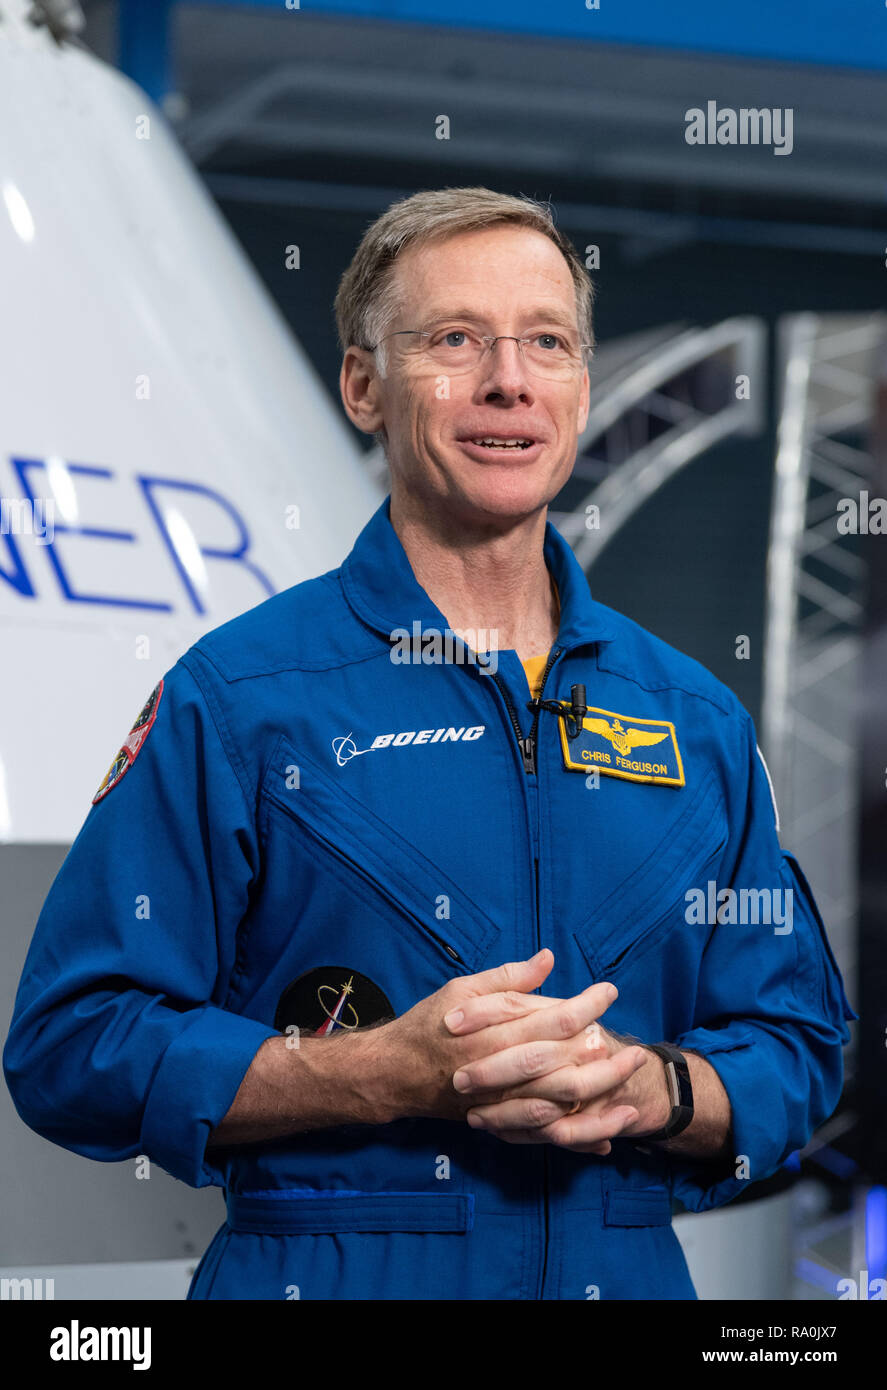 La NASA Boeing Commercial equipaggio astronauta Chris Ferguson durante l'annuncio di astronauti scelti per la Boeing e commerciale SpaceX equipaggi presso il Johnson Space Center Agosto 3, 2018 in Houston, Texas. Foto Stock